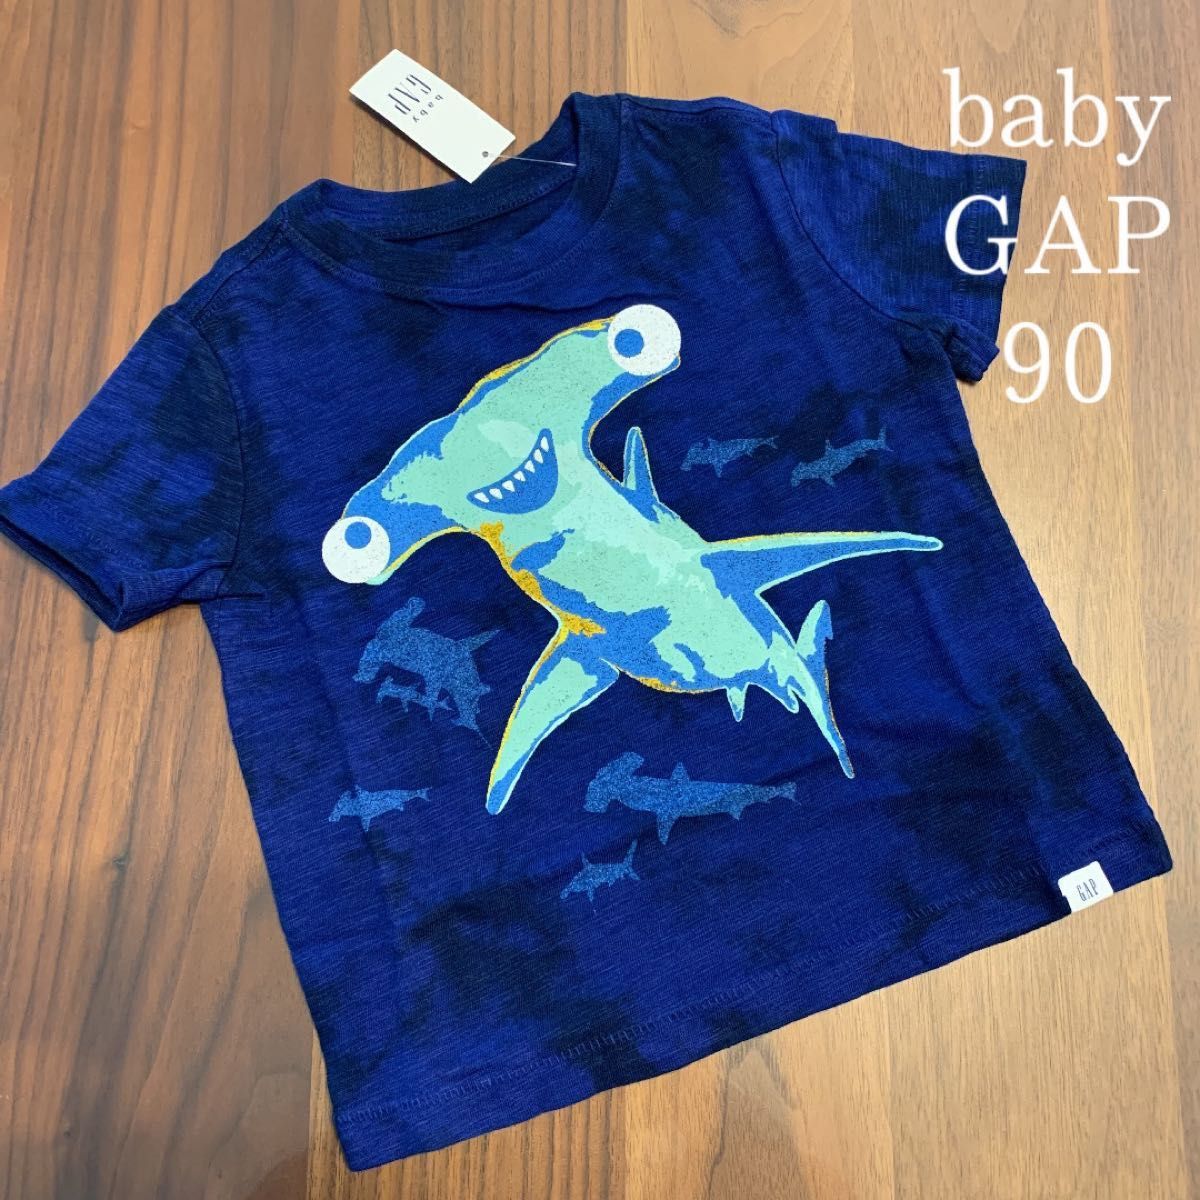 【新品】baby GAP ベビーギャップ 半袖 Tシャツ サメ シュモクザメ 90cm 男の子 保育園